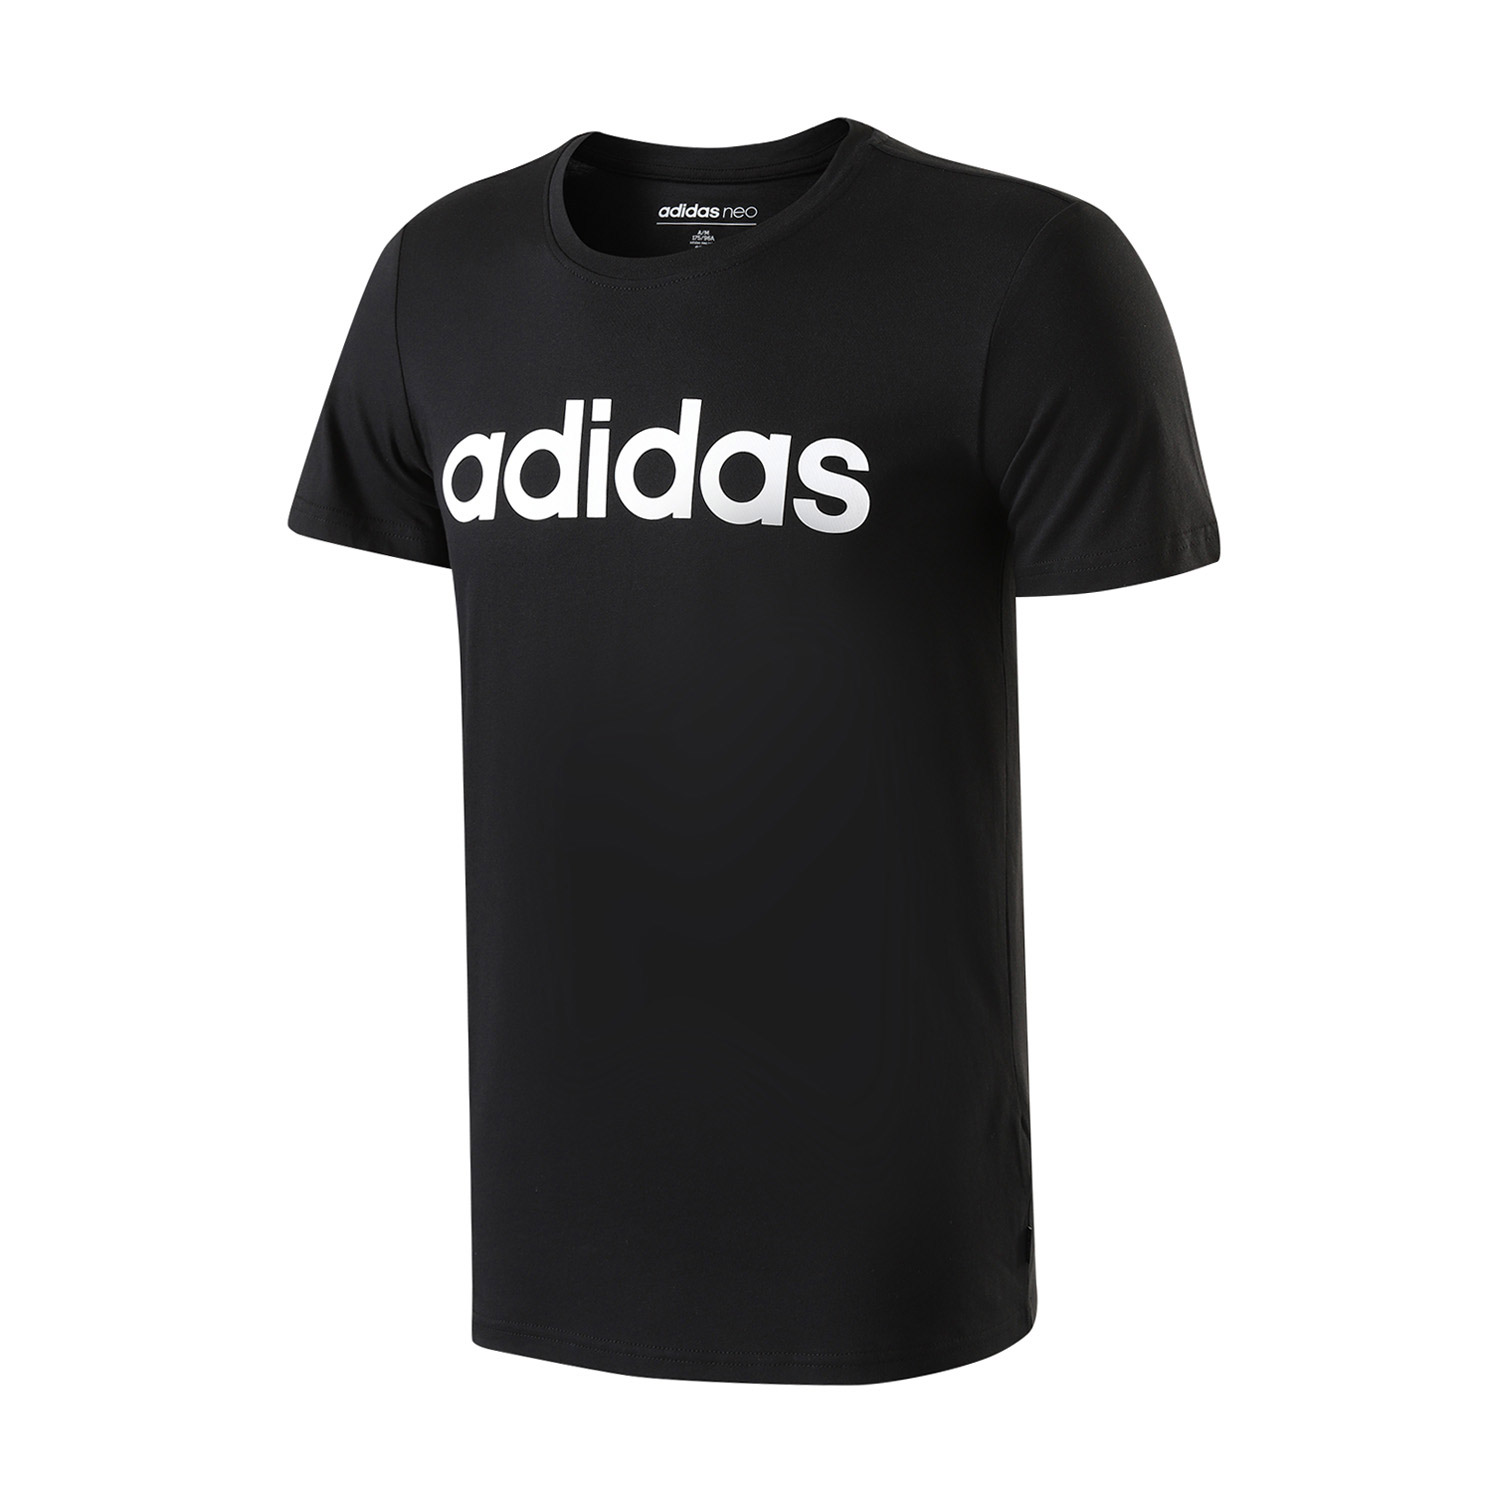 Adidas阿迪达斯男装跑步运动休闲圆领短袖T恤CV9315